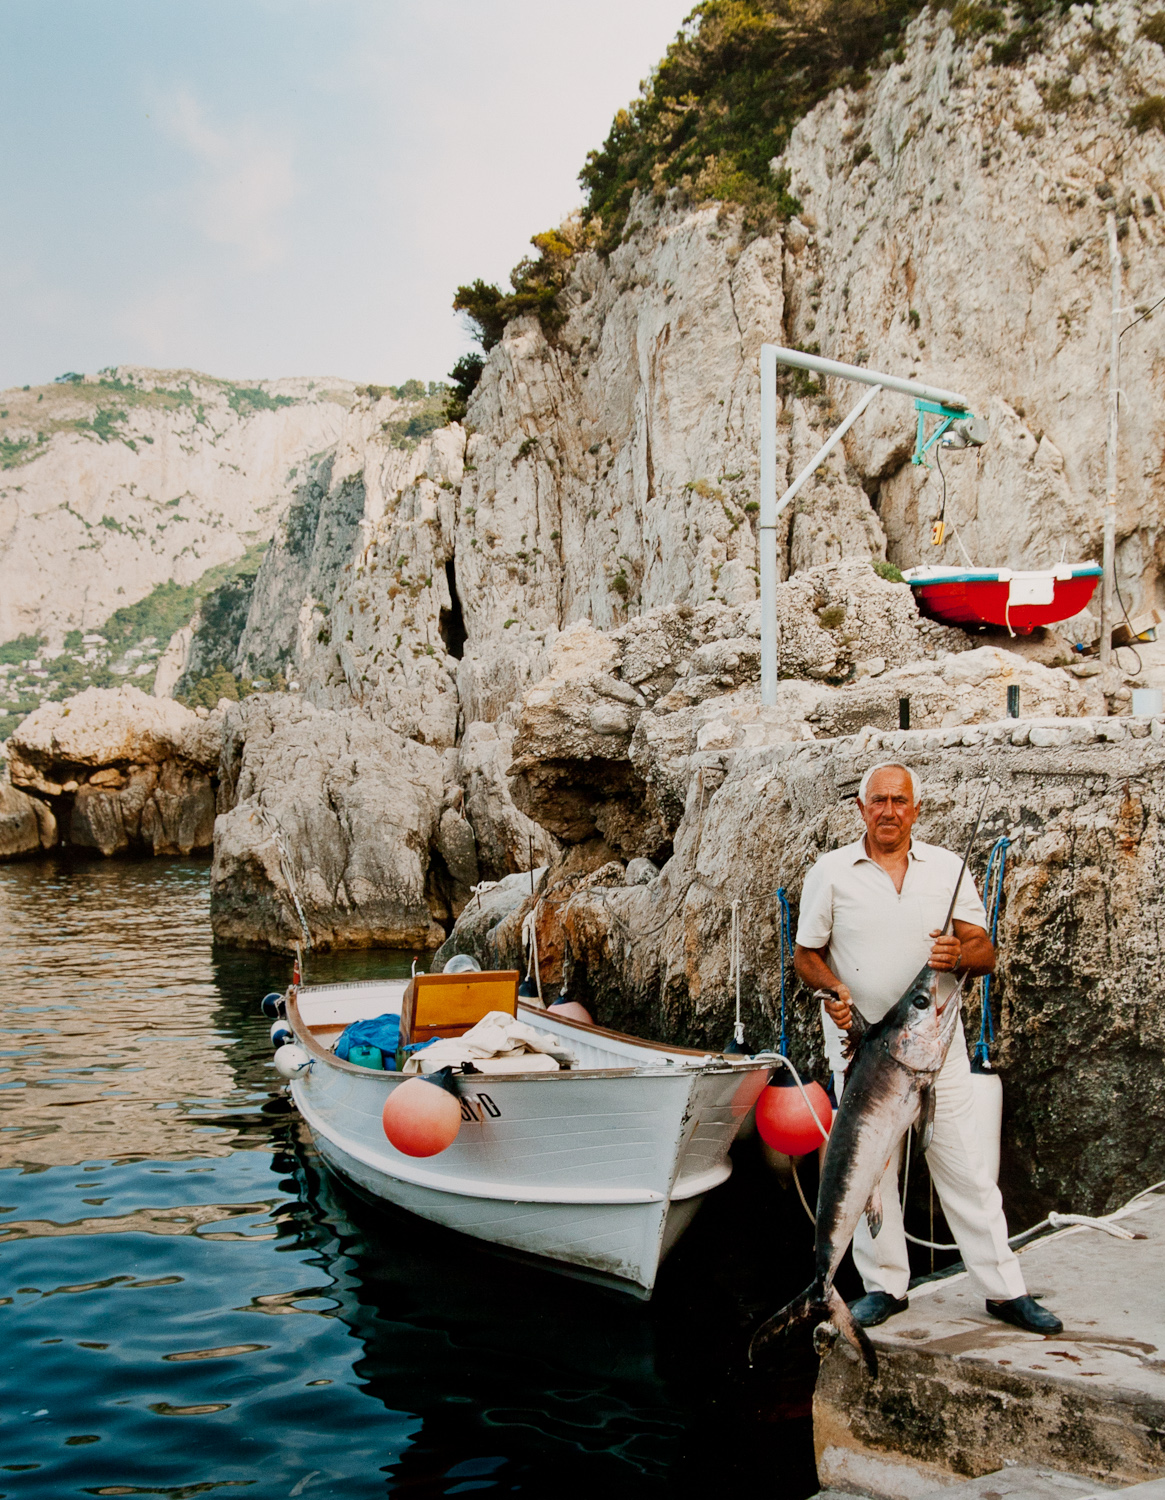 fisherman_capri (1 of 1).jpg